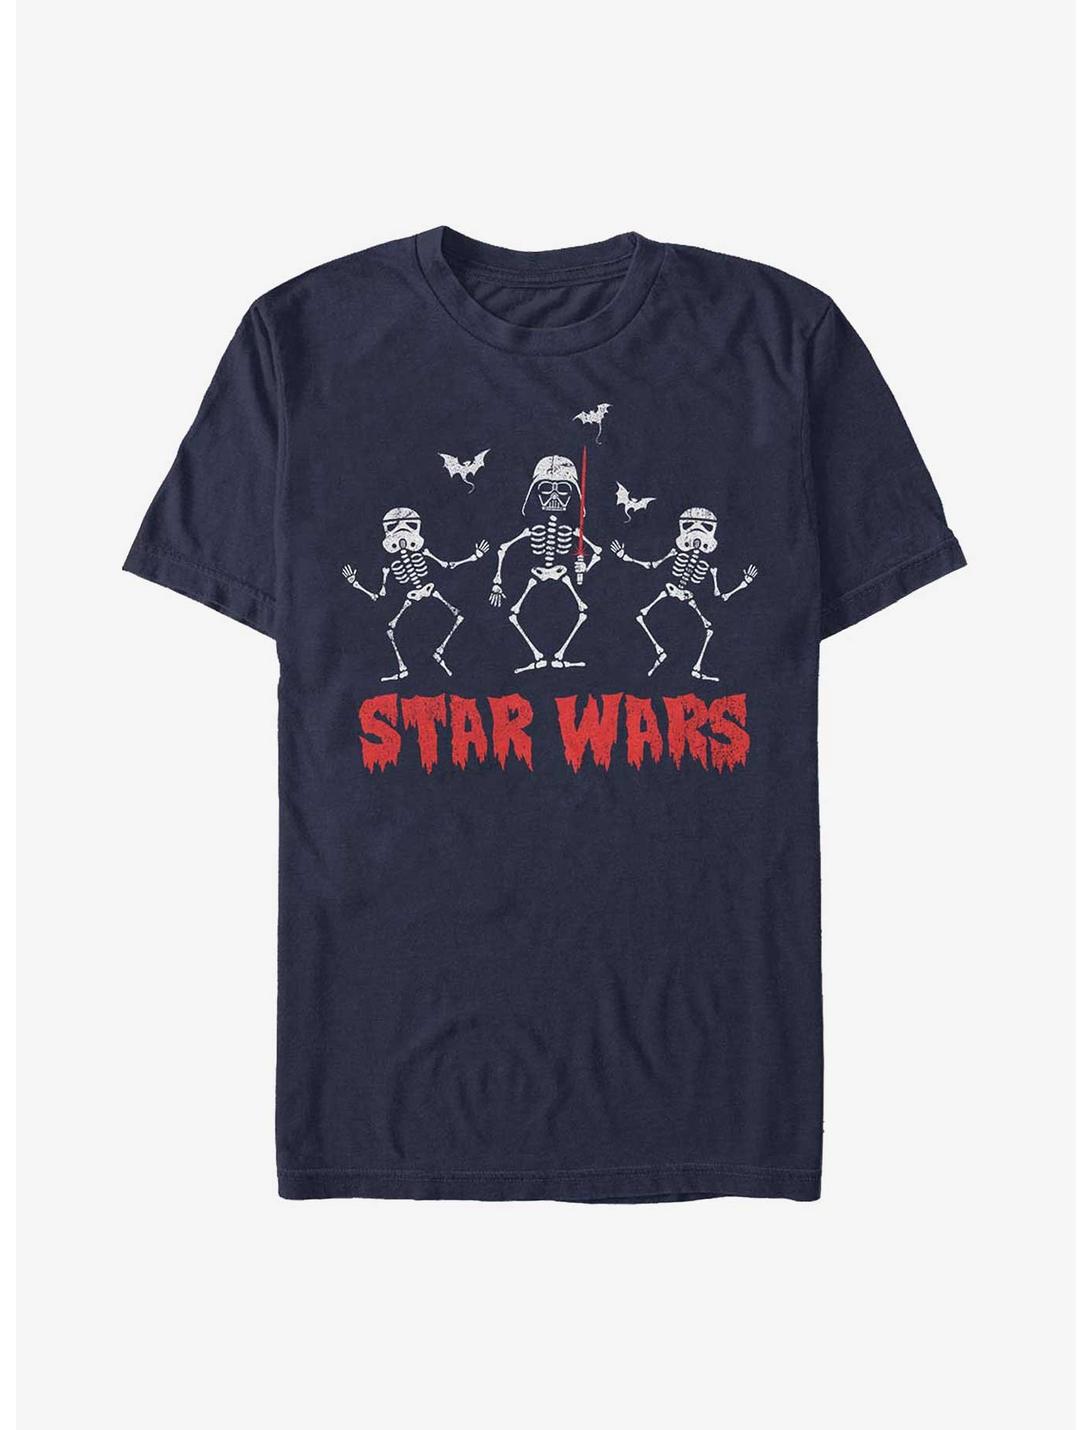 Star Wars Creep Wars T-Shirt, NAVY, hi-res